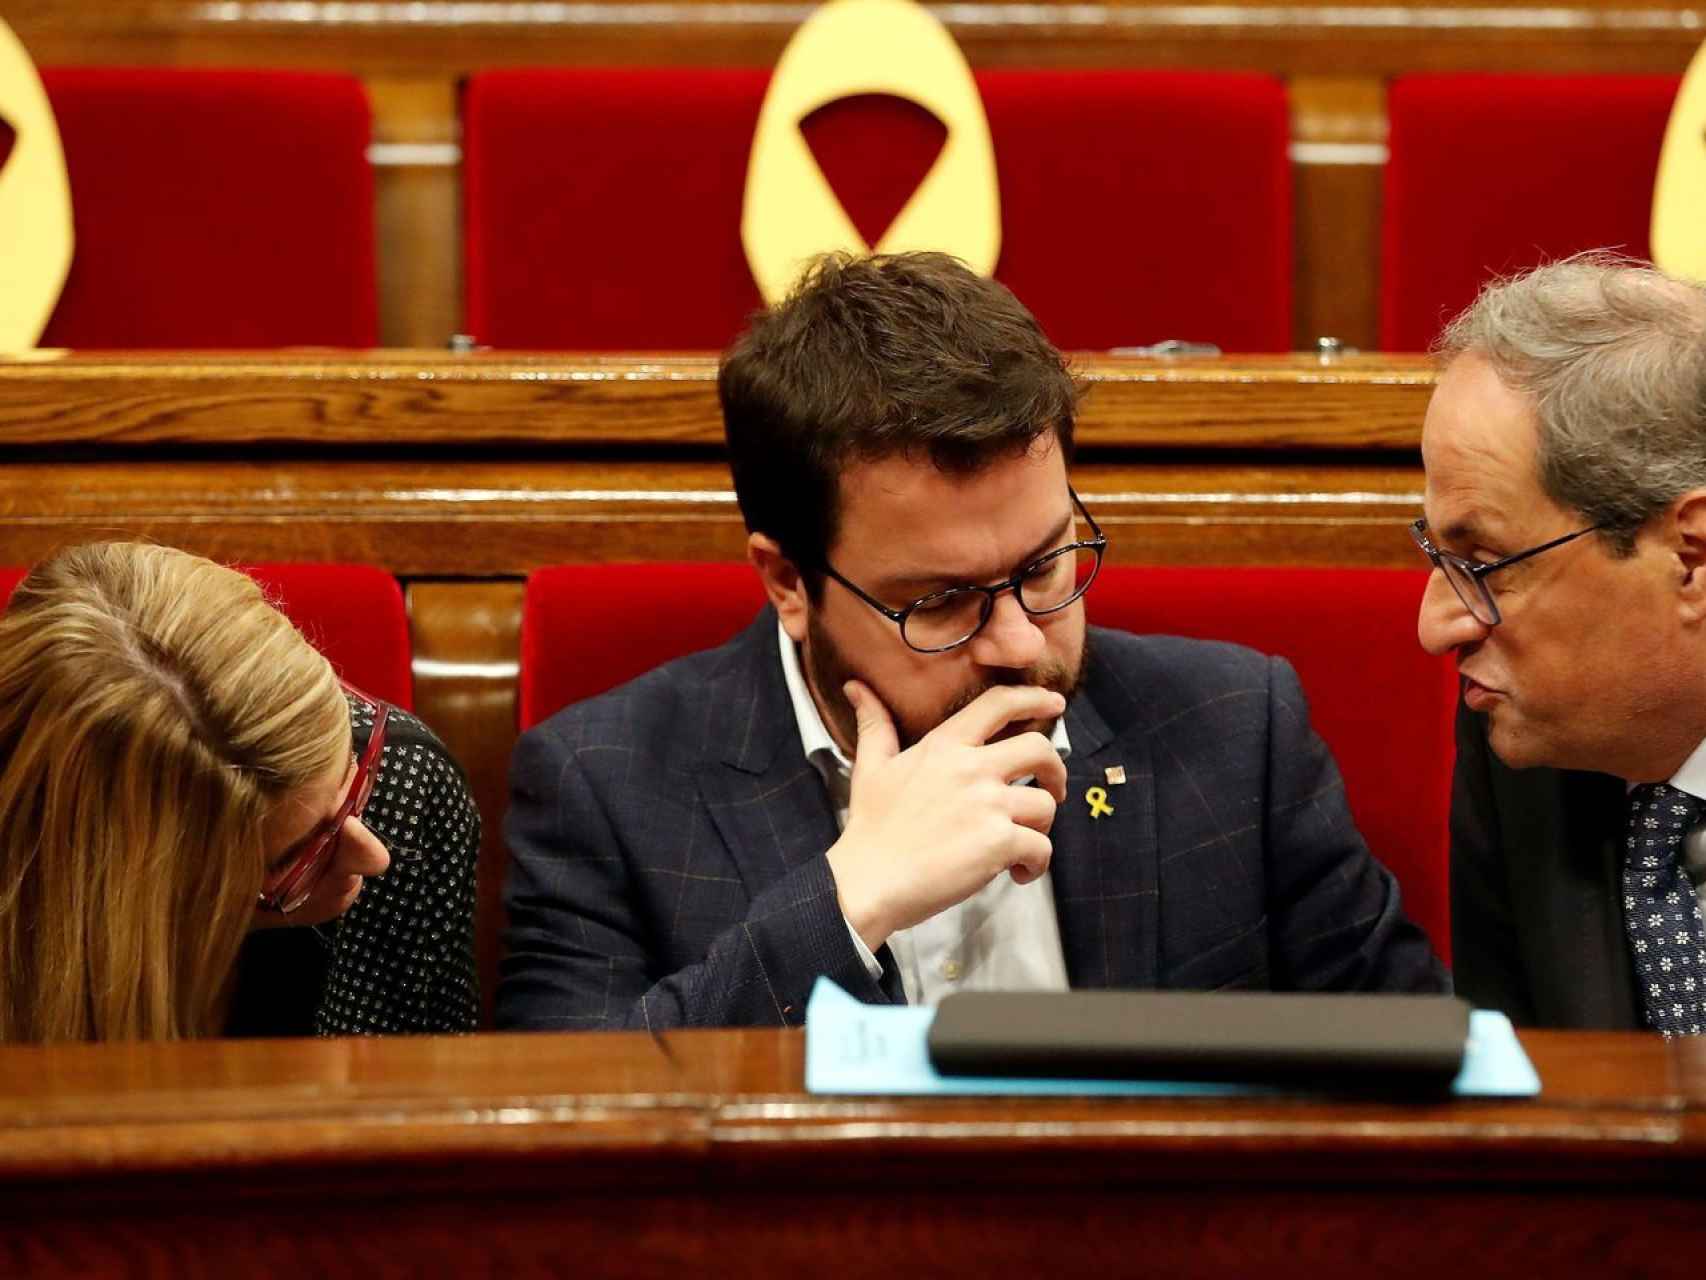 El presidente catalán Torra, junto al vicepresidente Aragonés y a Elsa Artadi, en el Parlament./